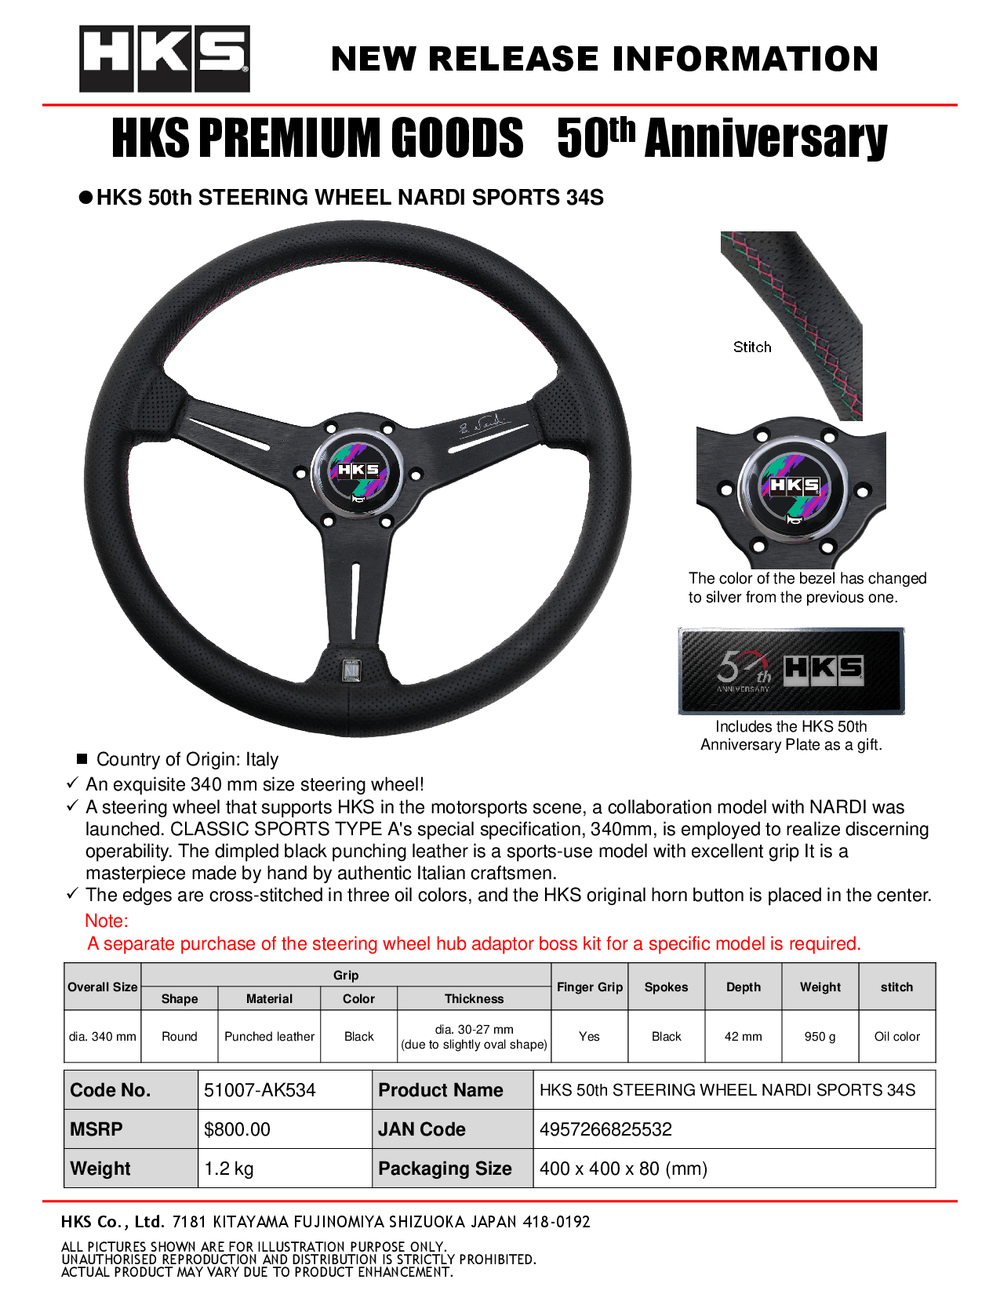 HKS 50th Anniversary Steering Wheel *PRE-ORDER*